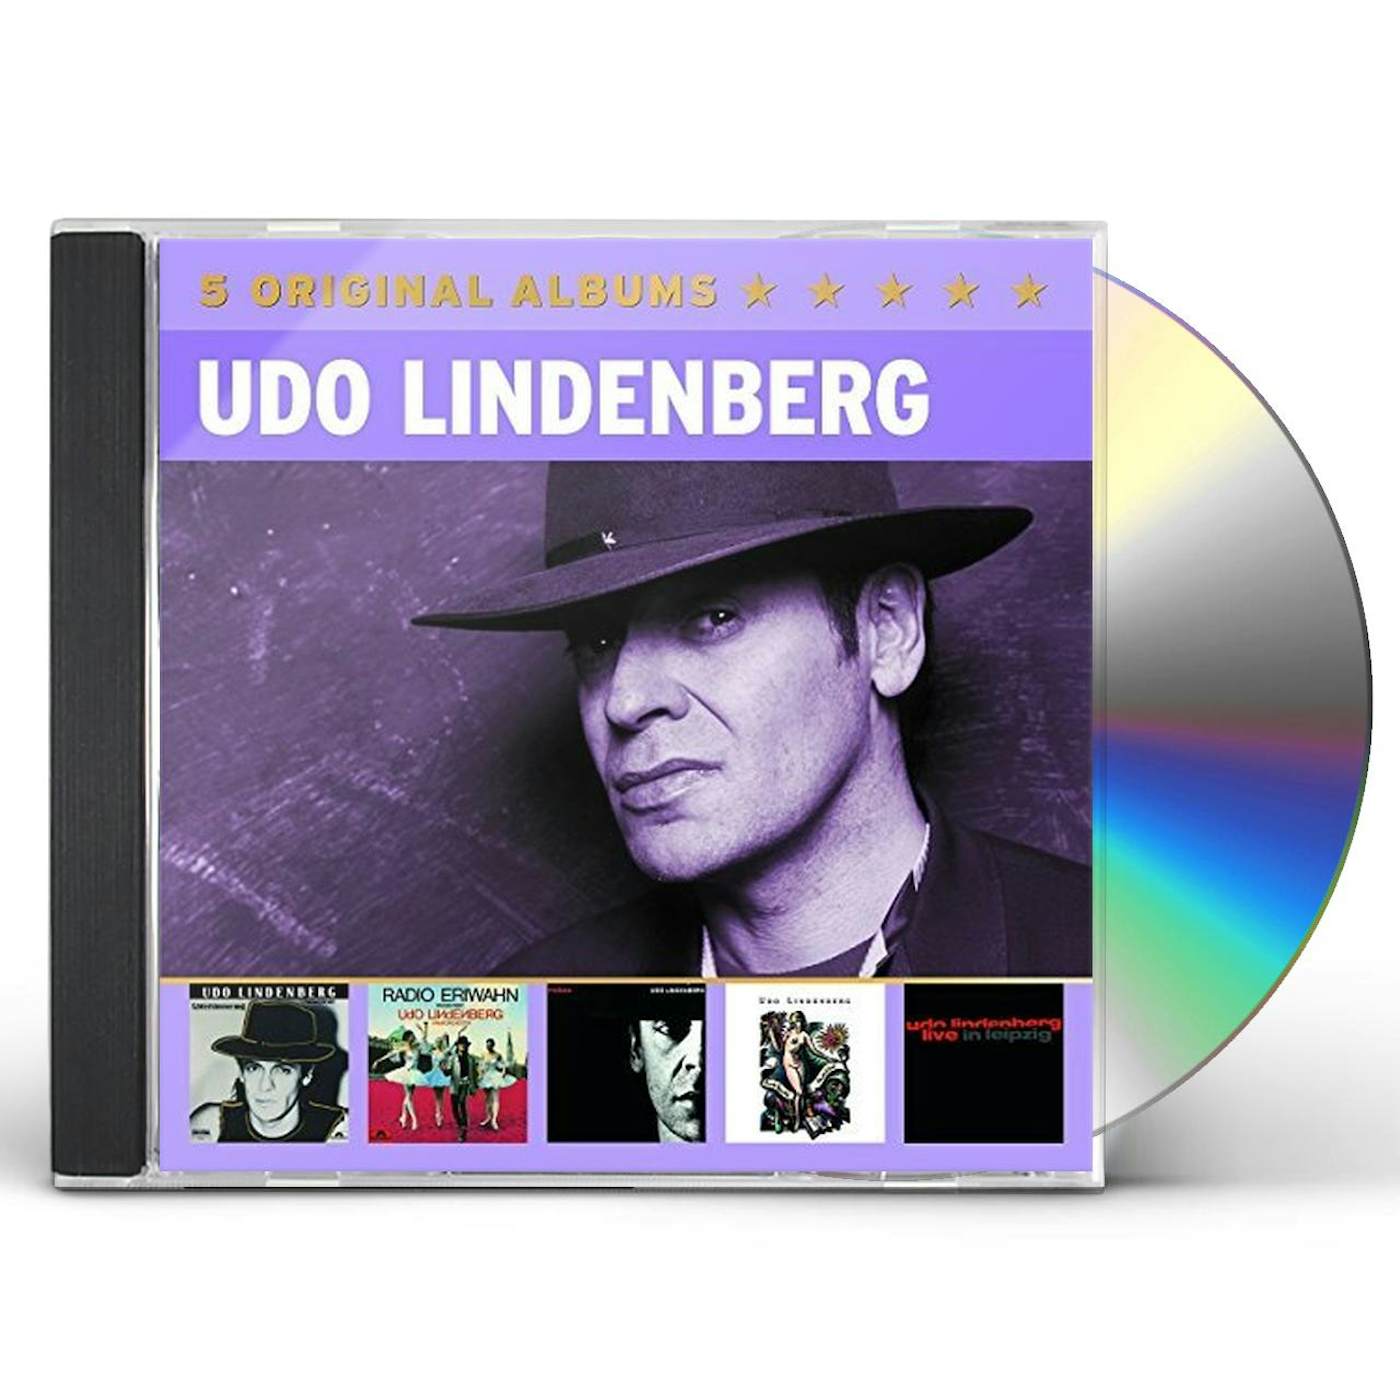 Udo Lindenberg 5 ORIGINAL ALBUMS 2 CD